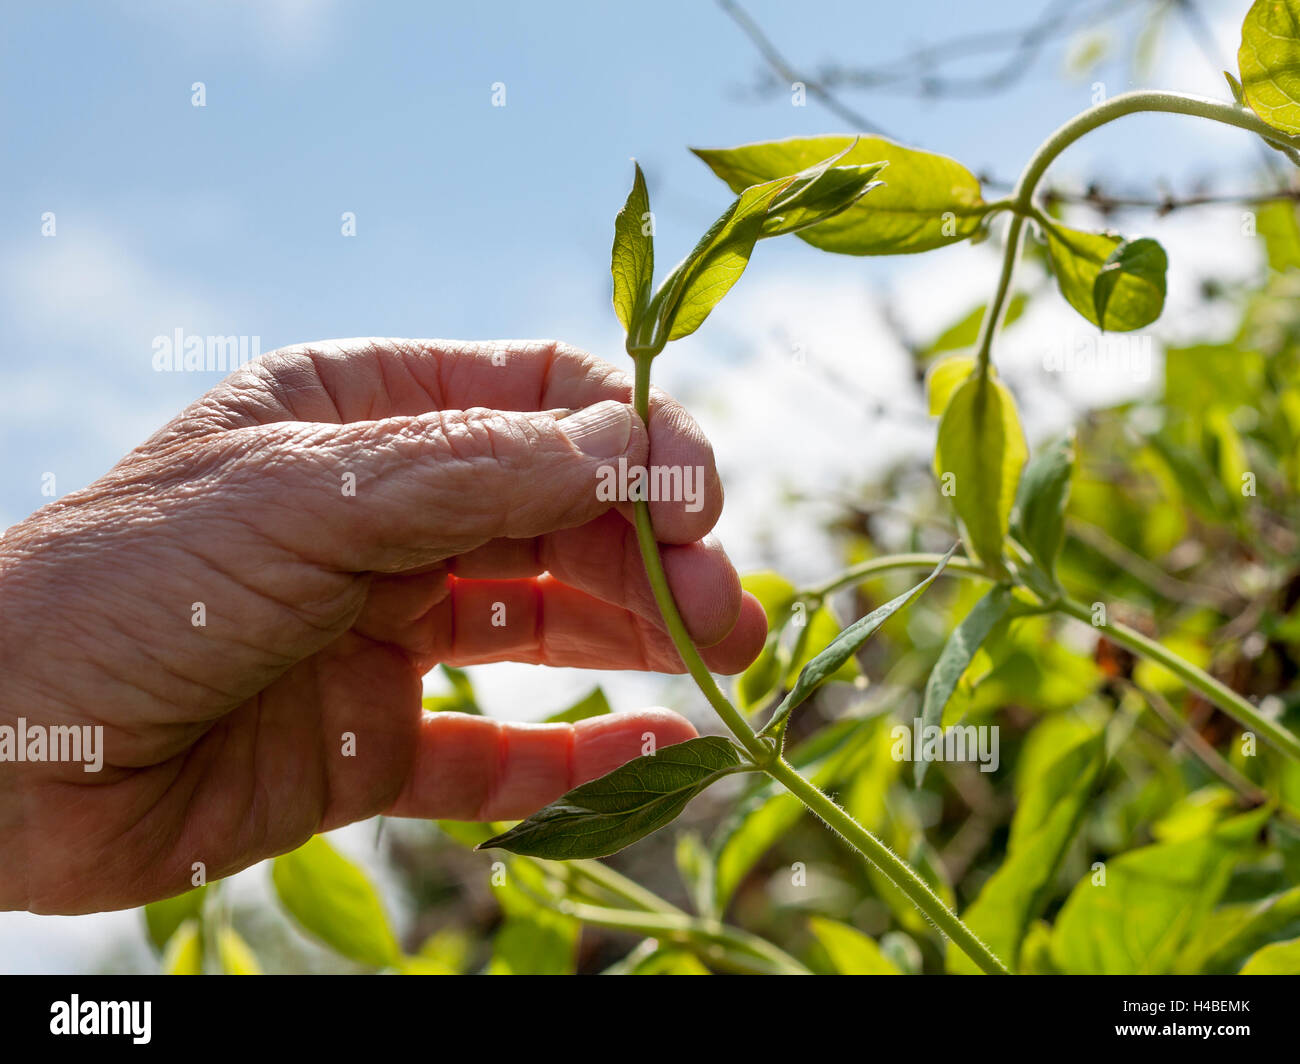 Giardiniere la mano che regge una giovane pianta rampicante con sfondo blu. Donna senior Foto Stock